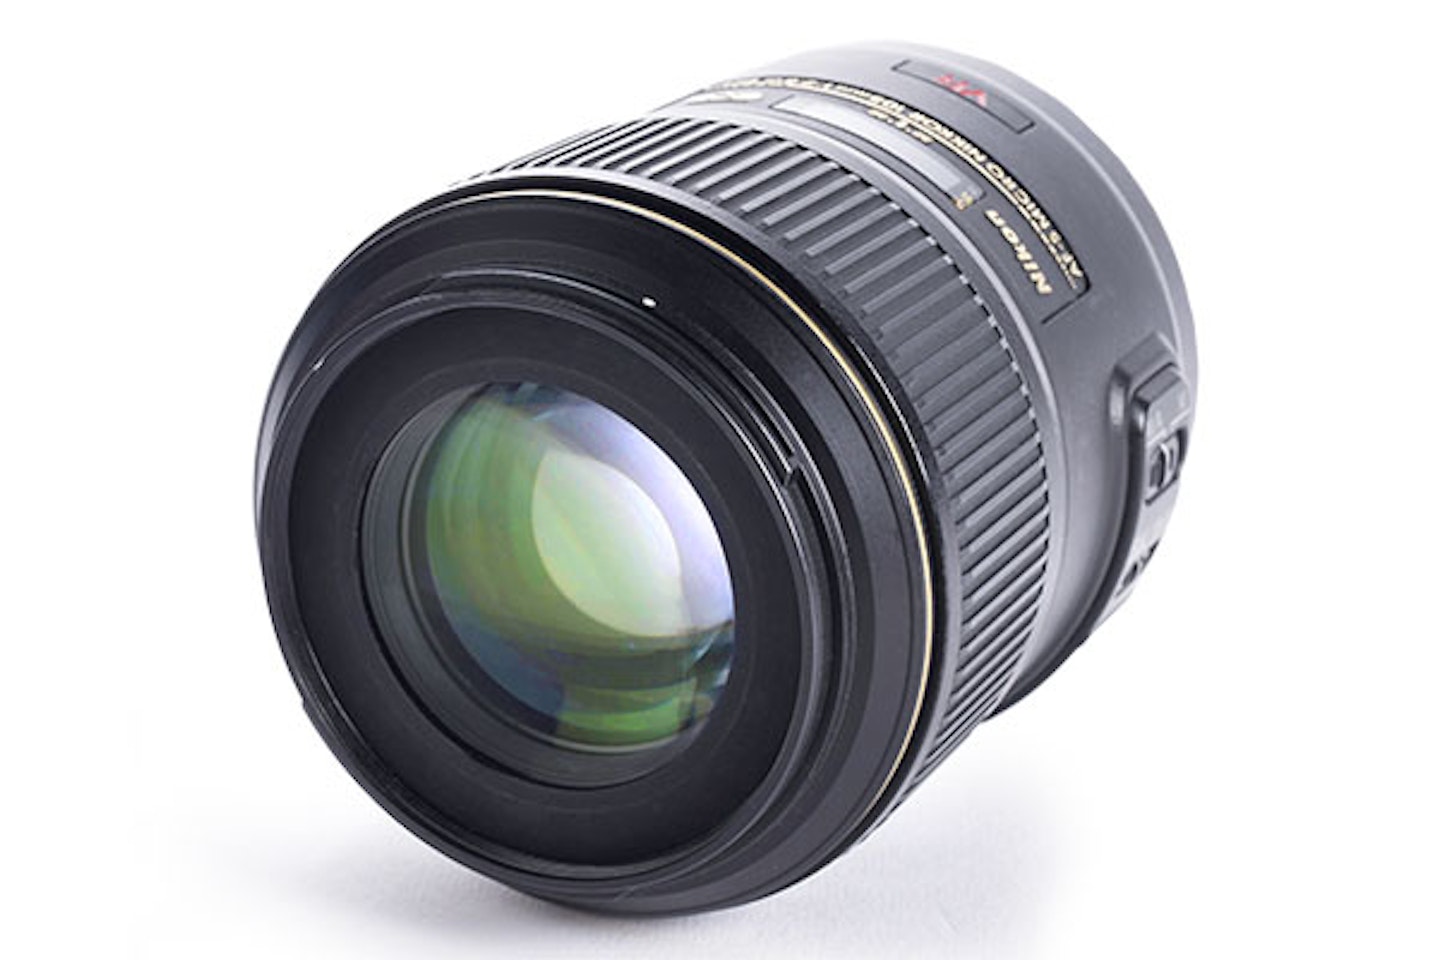 Nikon AF-S VR Micro-Nikkor 105mm f/2.8G IF-ED VR